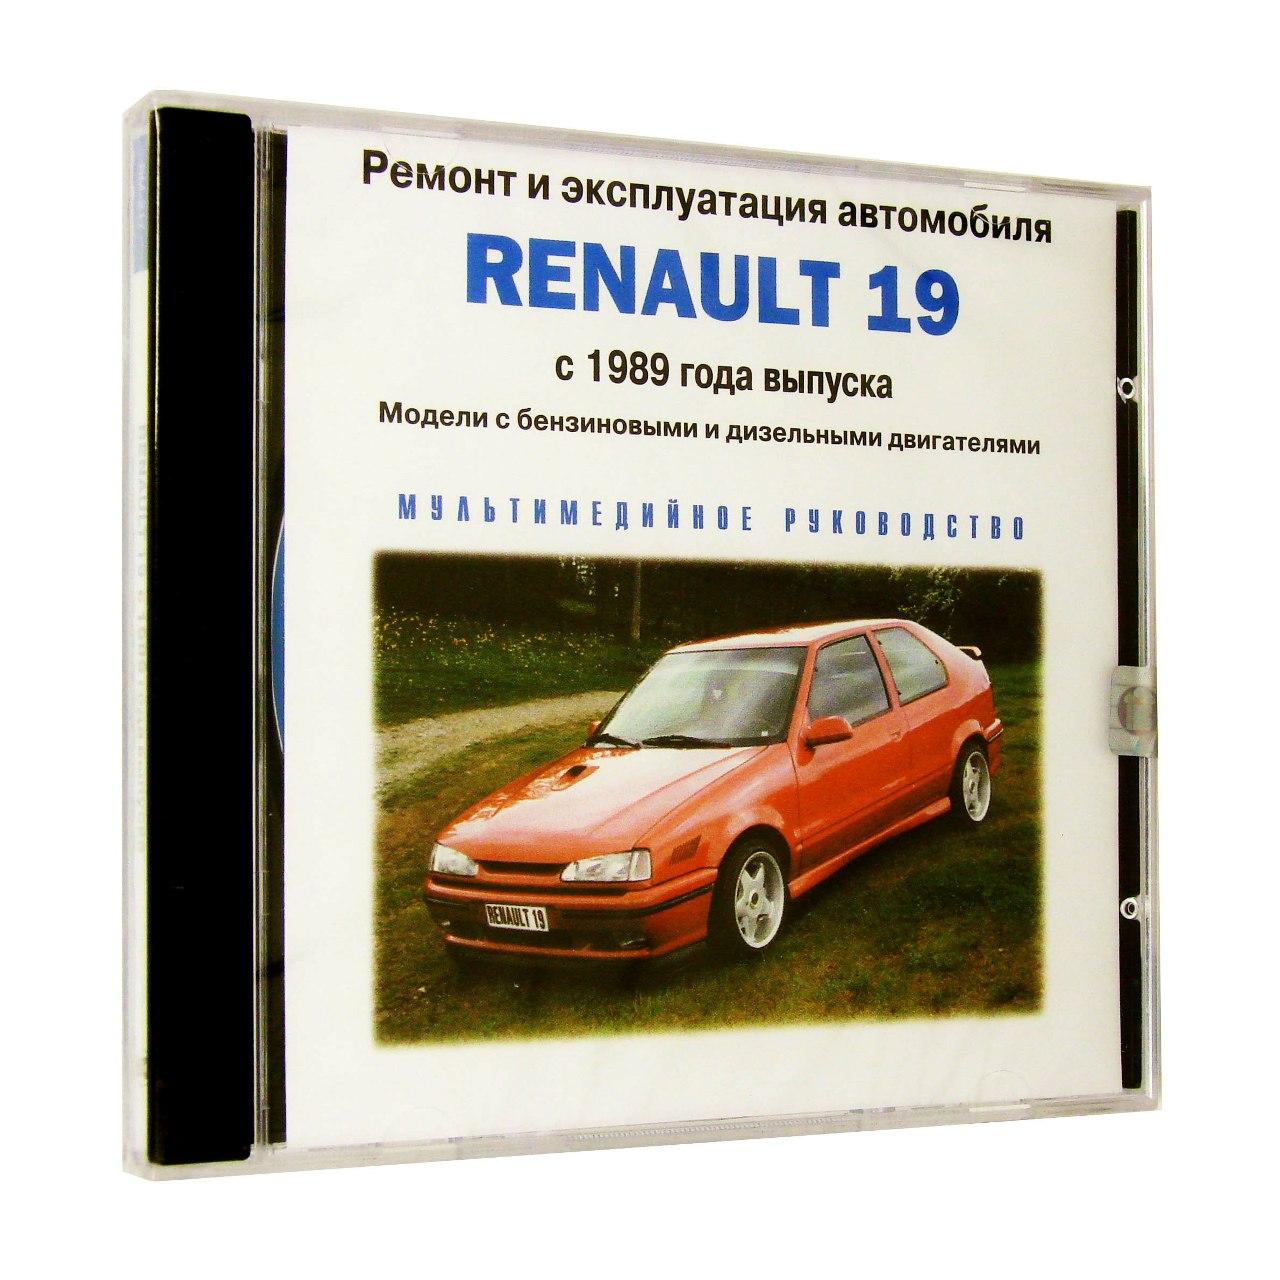 Компьютерный компакт-диск Renault 19 с 1989. Ремонт и эксплуатация автомобиля. (ПК), фирма "РМГ Мультимедиа", 1CD